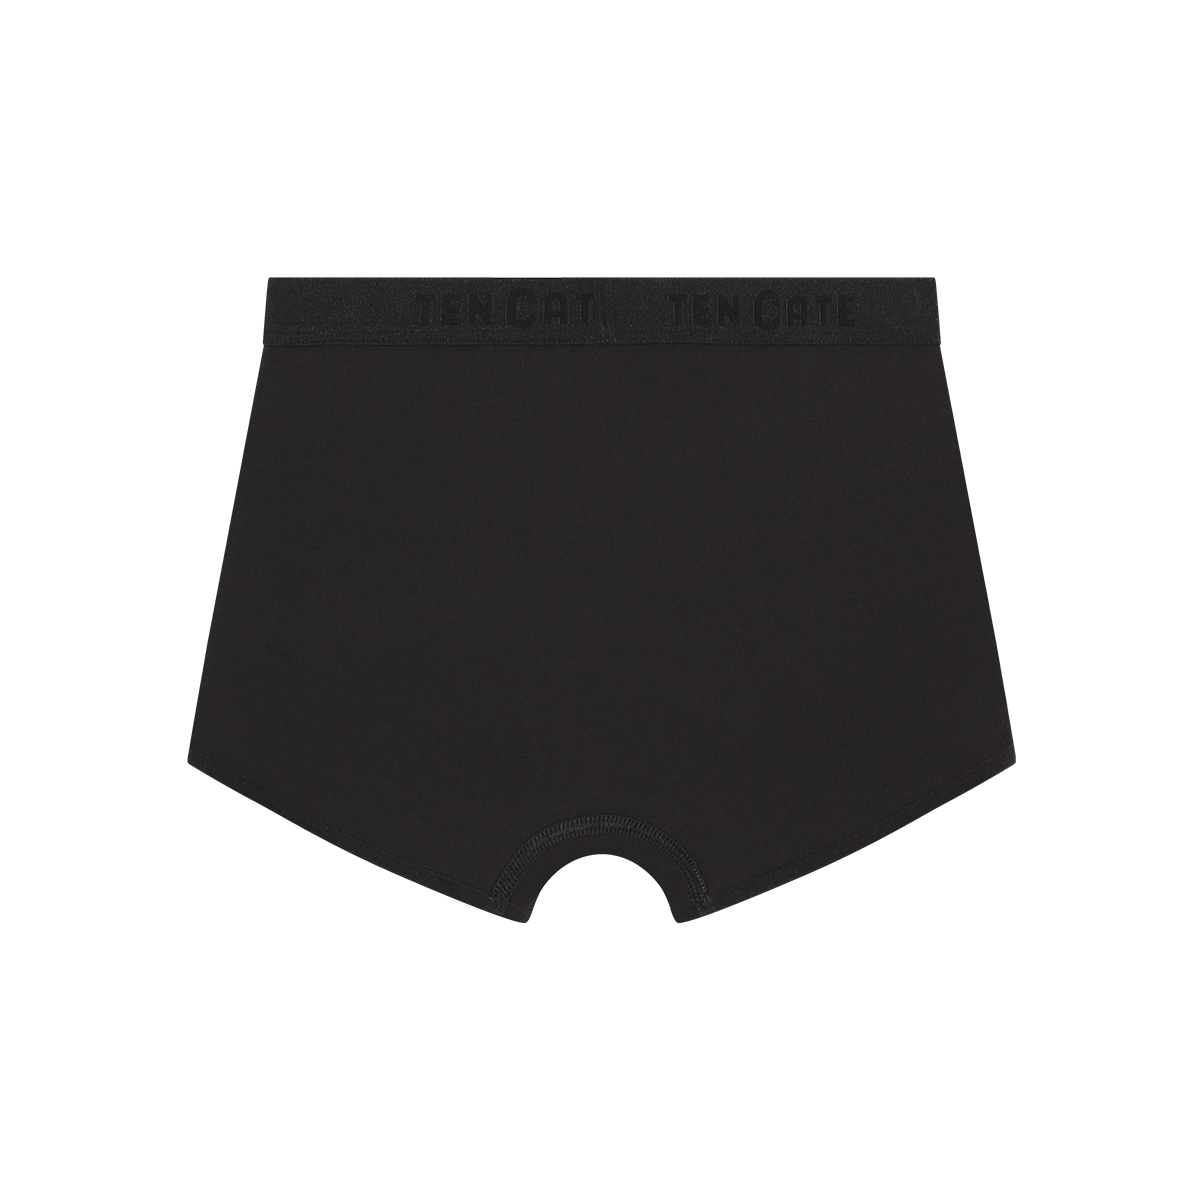 shorts zwart 2 pack